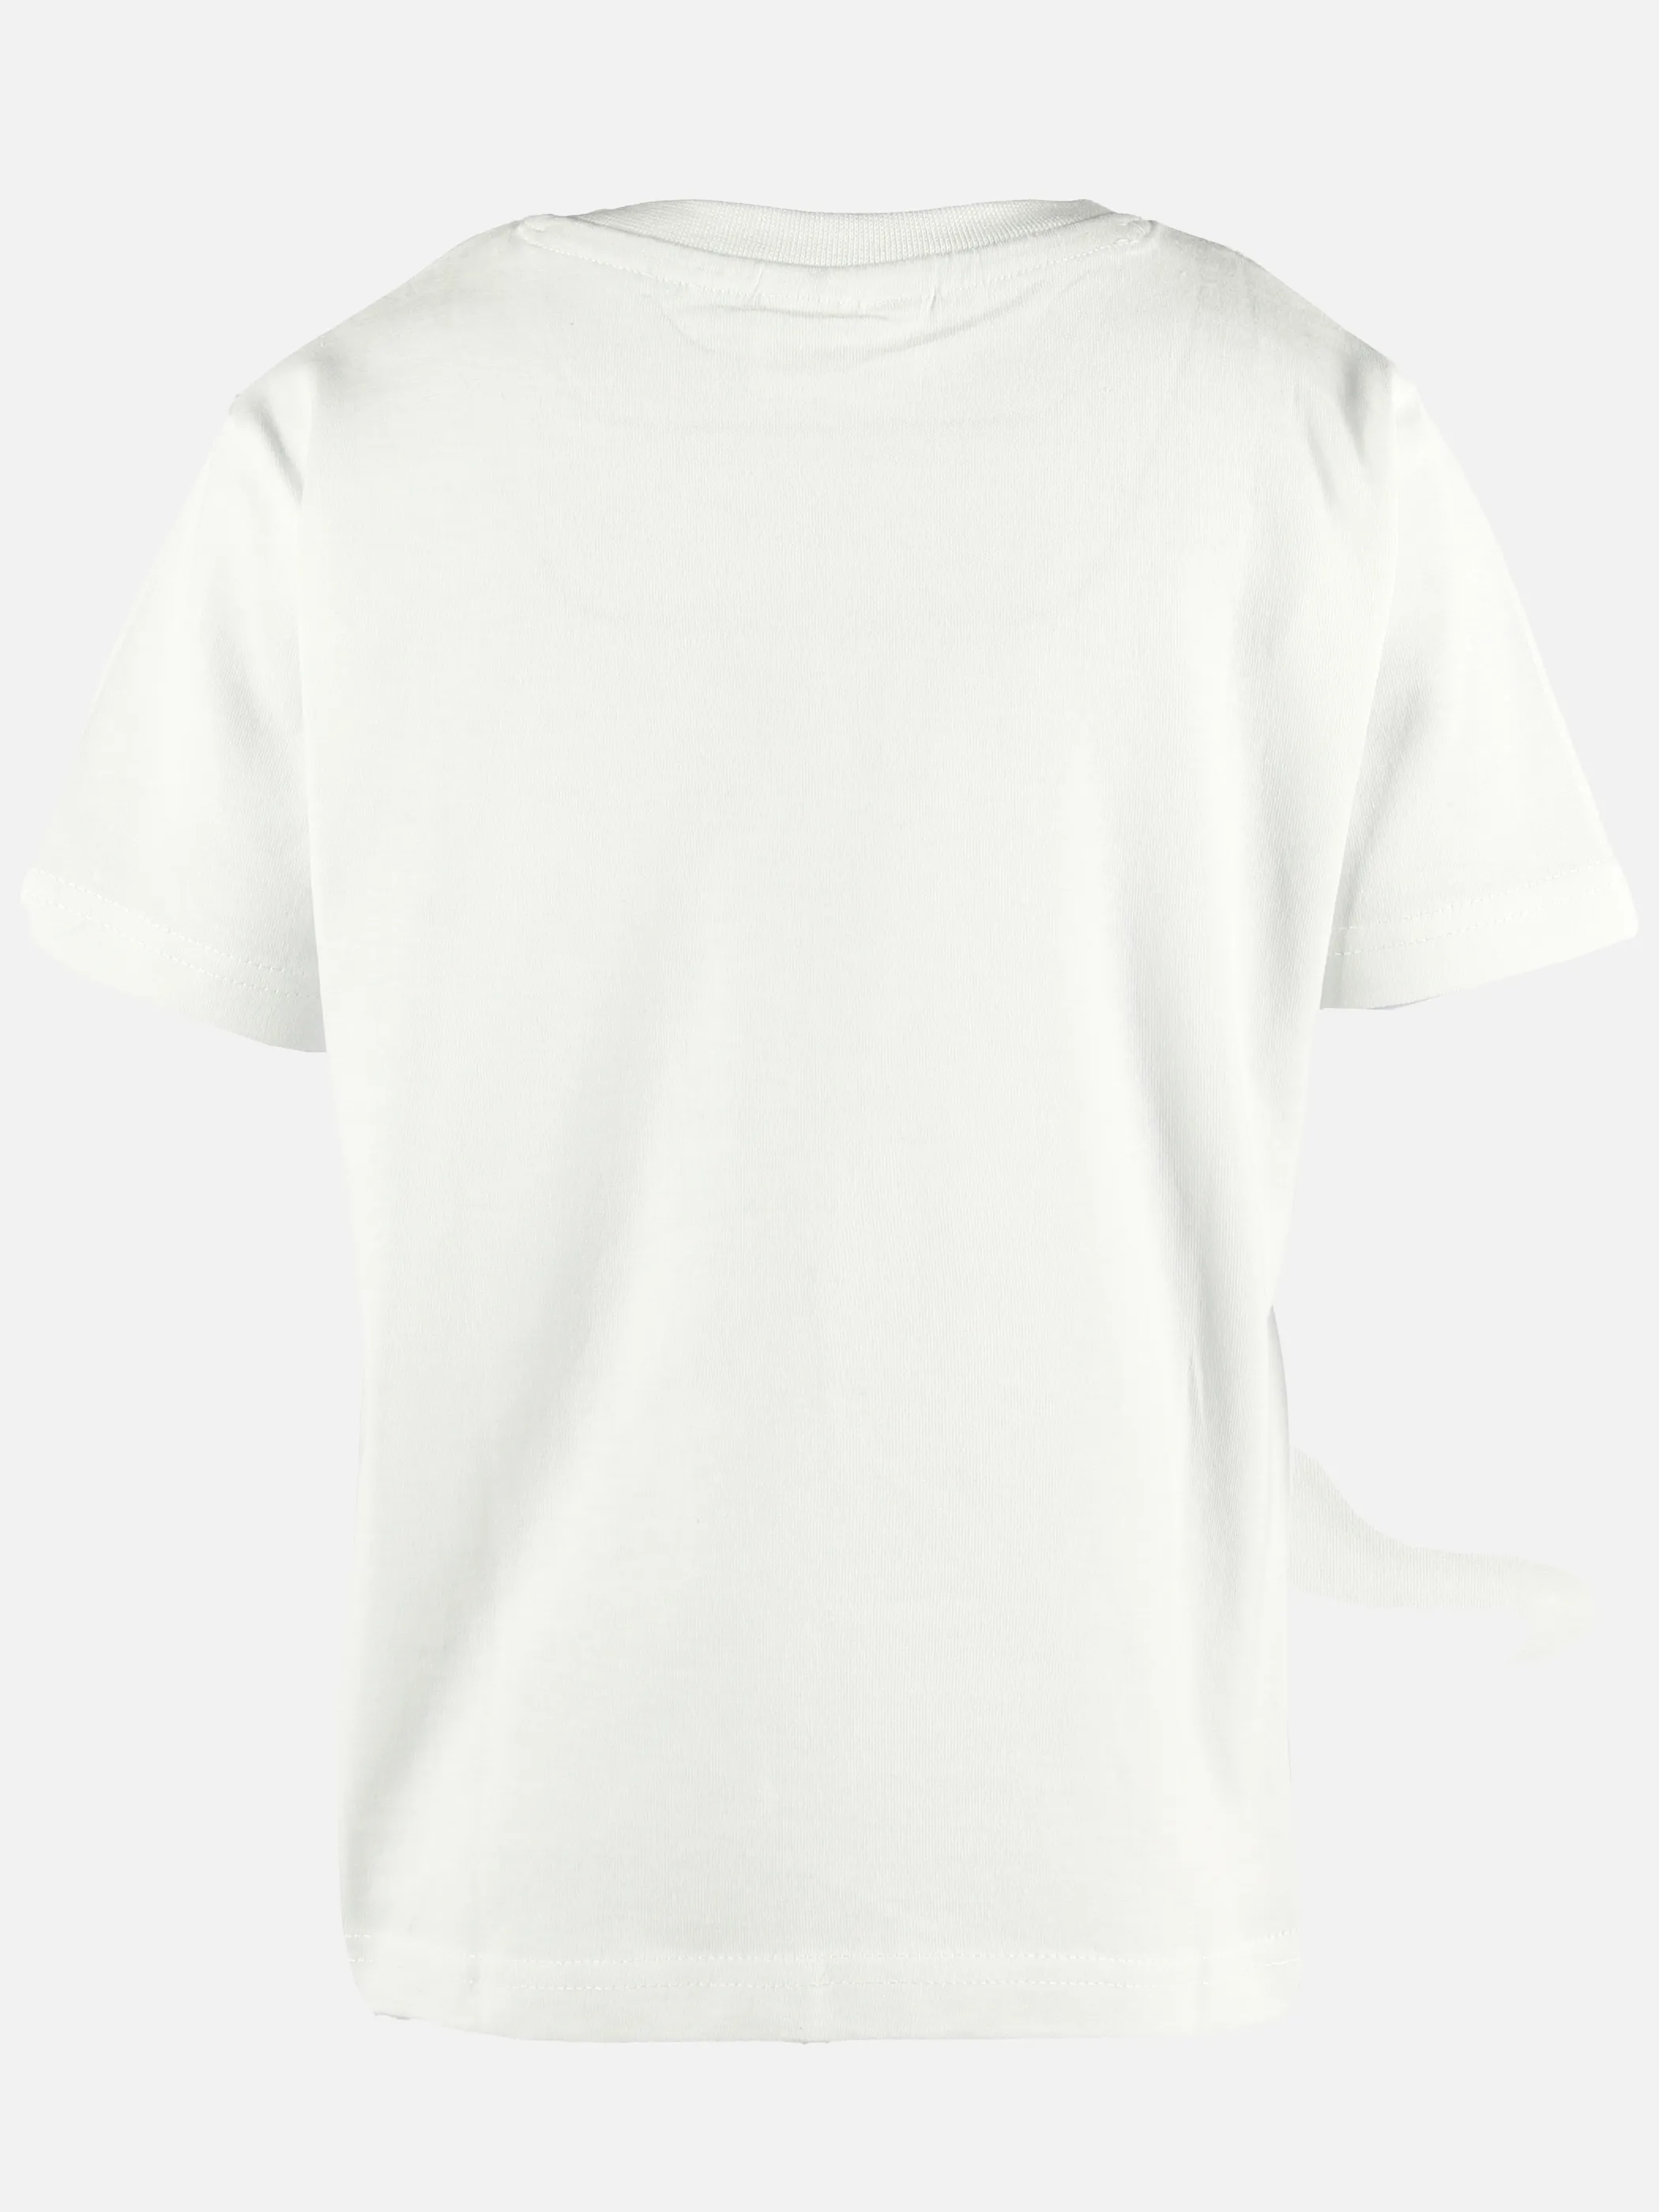 Stop + Go KJ T-Shirt mit Frontdruck in offwhite Weiß 891562 OFFWHITE 2